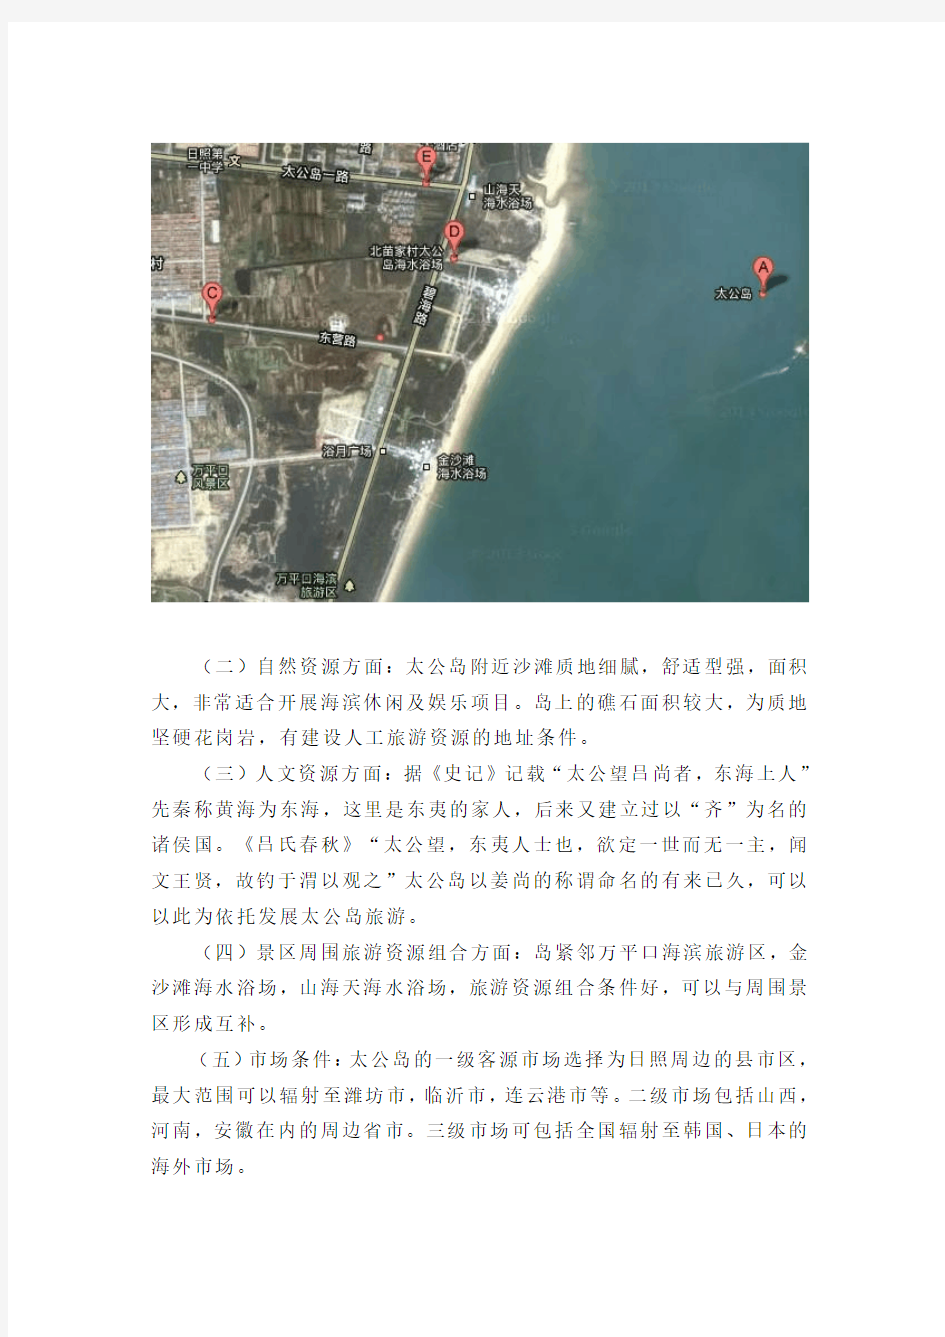 刘公岛旅游规划方案